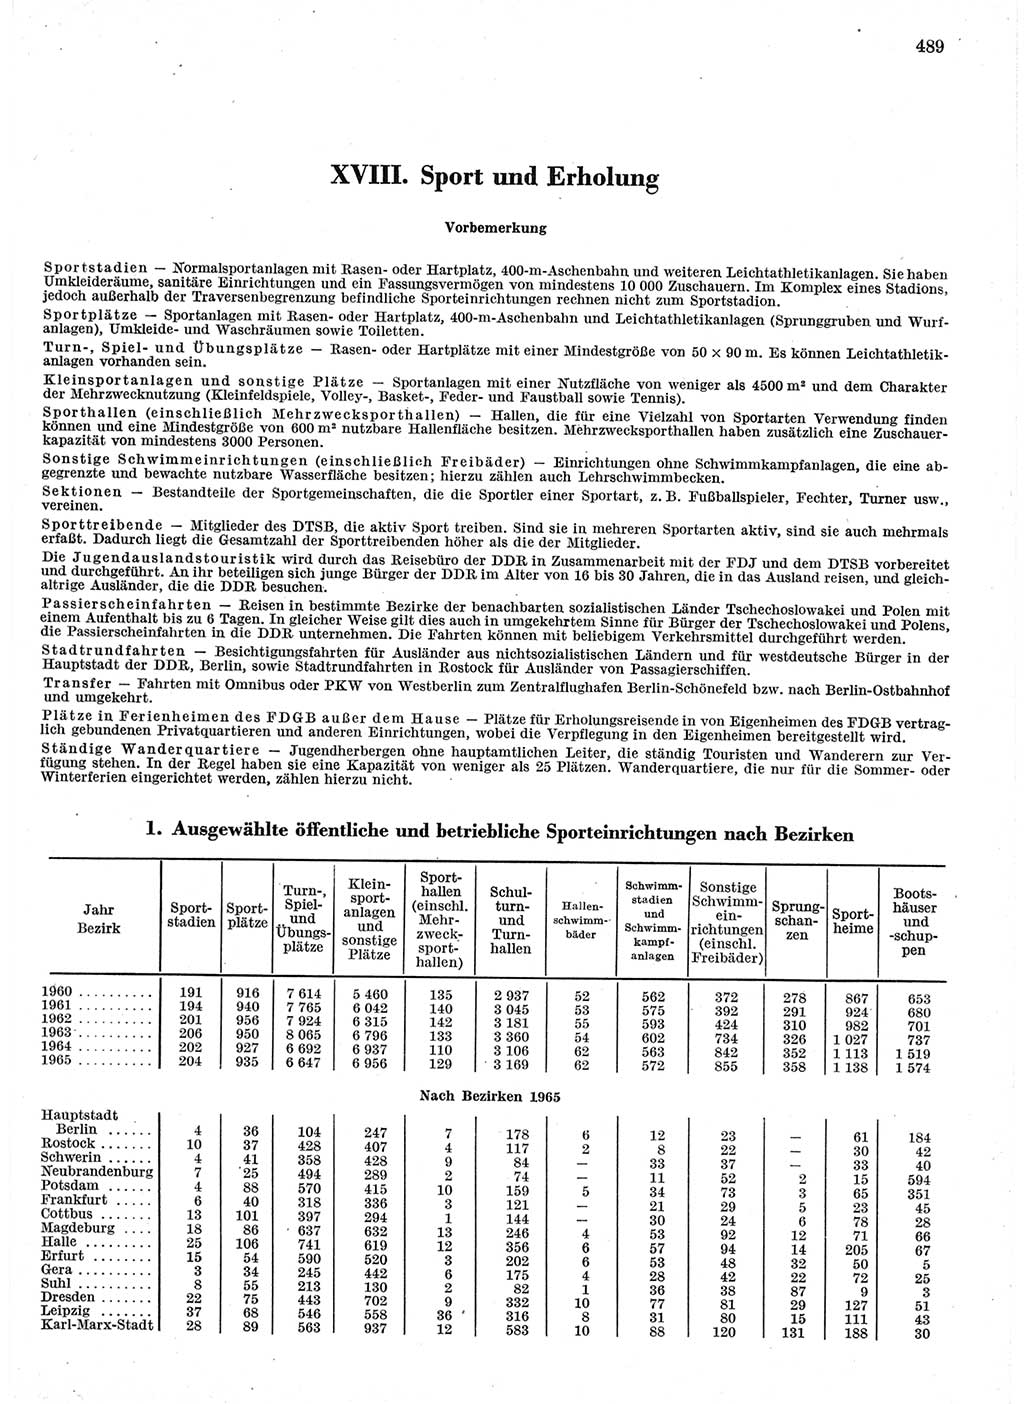 Statistisches Jahrbuch der Deutschen Demokratischen Republik (DDR) 1966, Seite 489 (Stat. Jb. DDR 1966, S. 489)